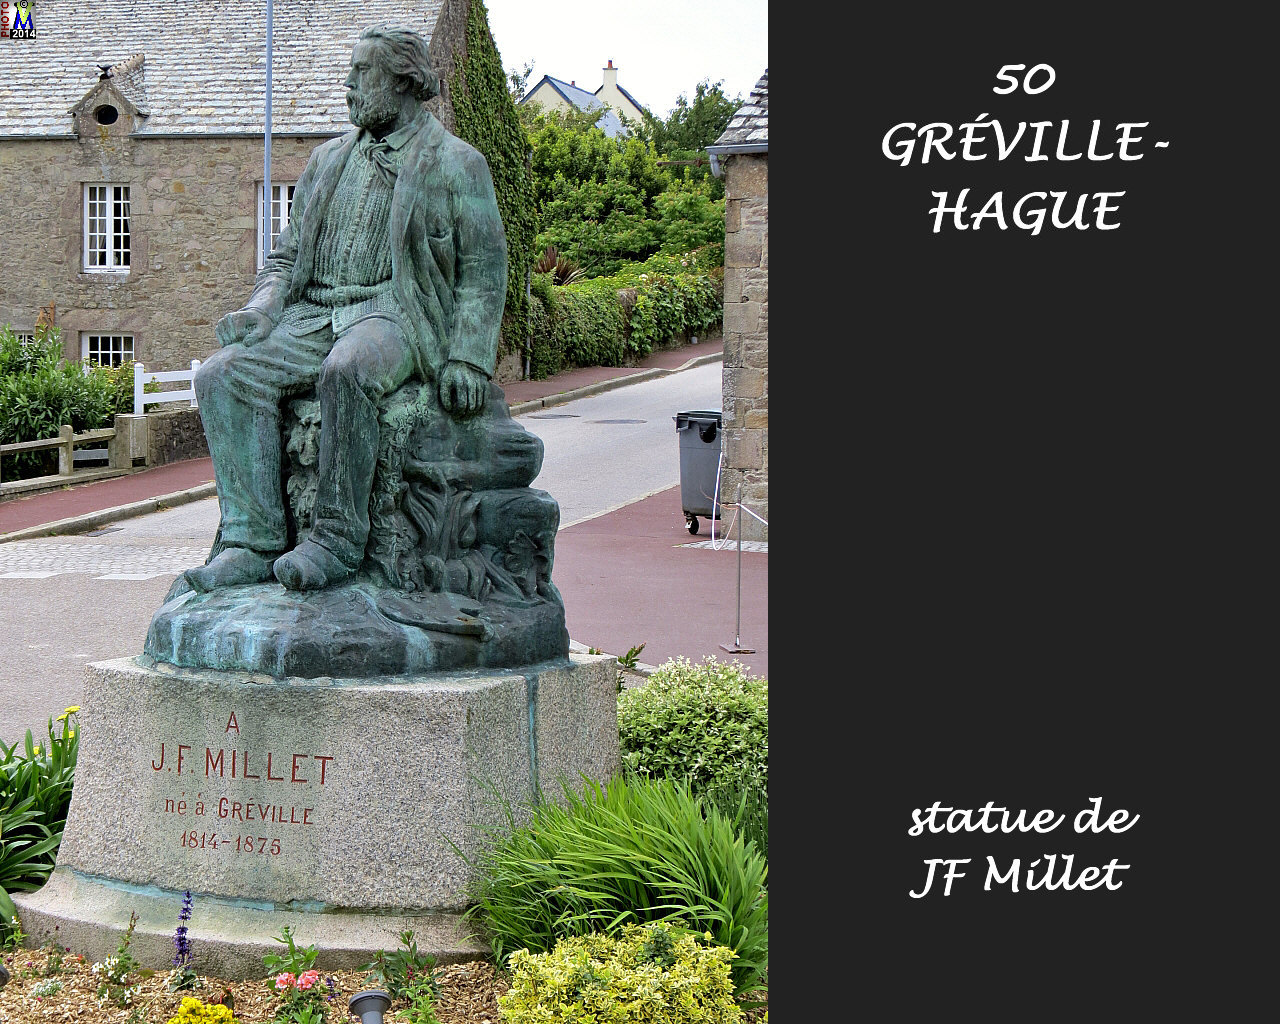 50GREVILLE-HAGUE_millet_100.jpg